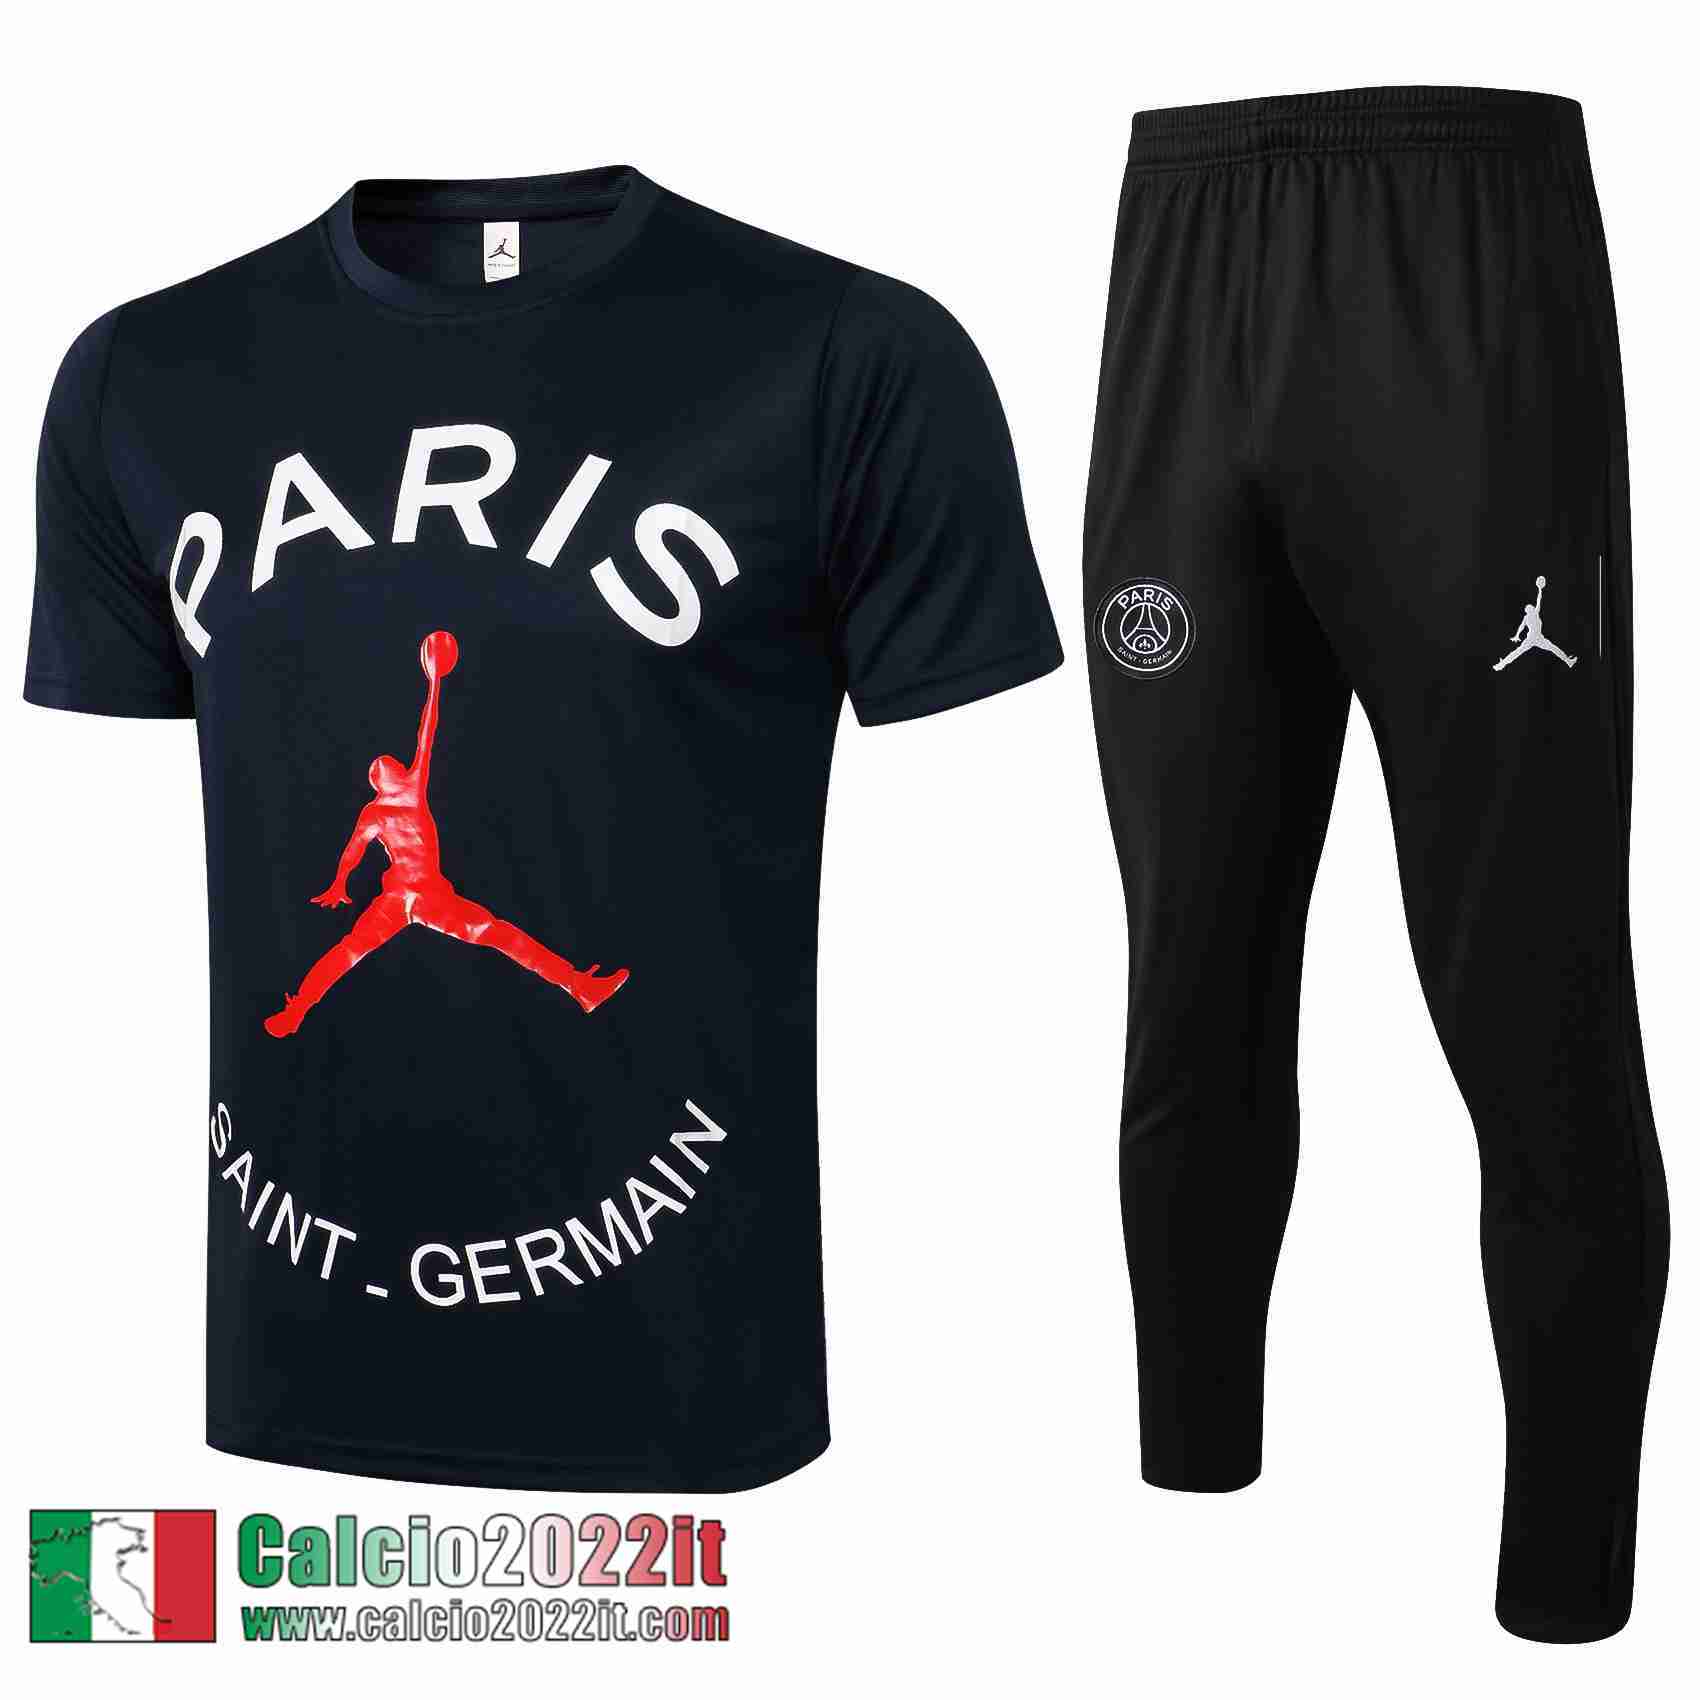 Paris Saint Germain Psg Maglia T-shirt Air Jordan Azzurra Marino Pl05 2021 2022